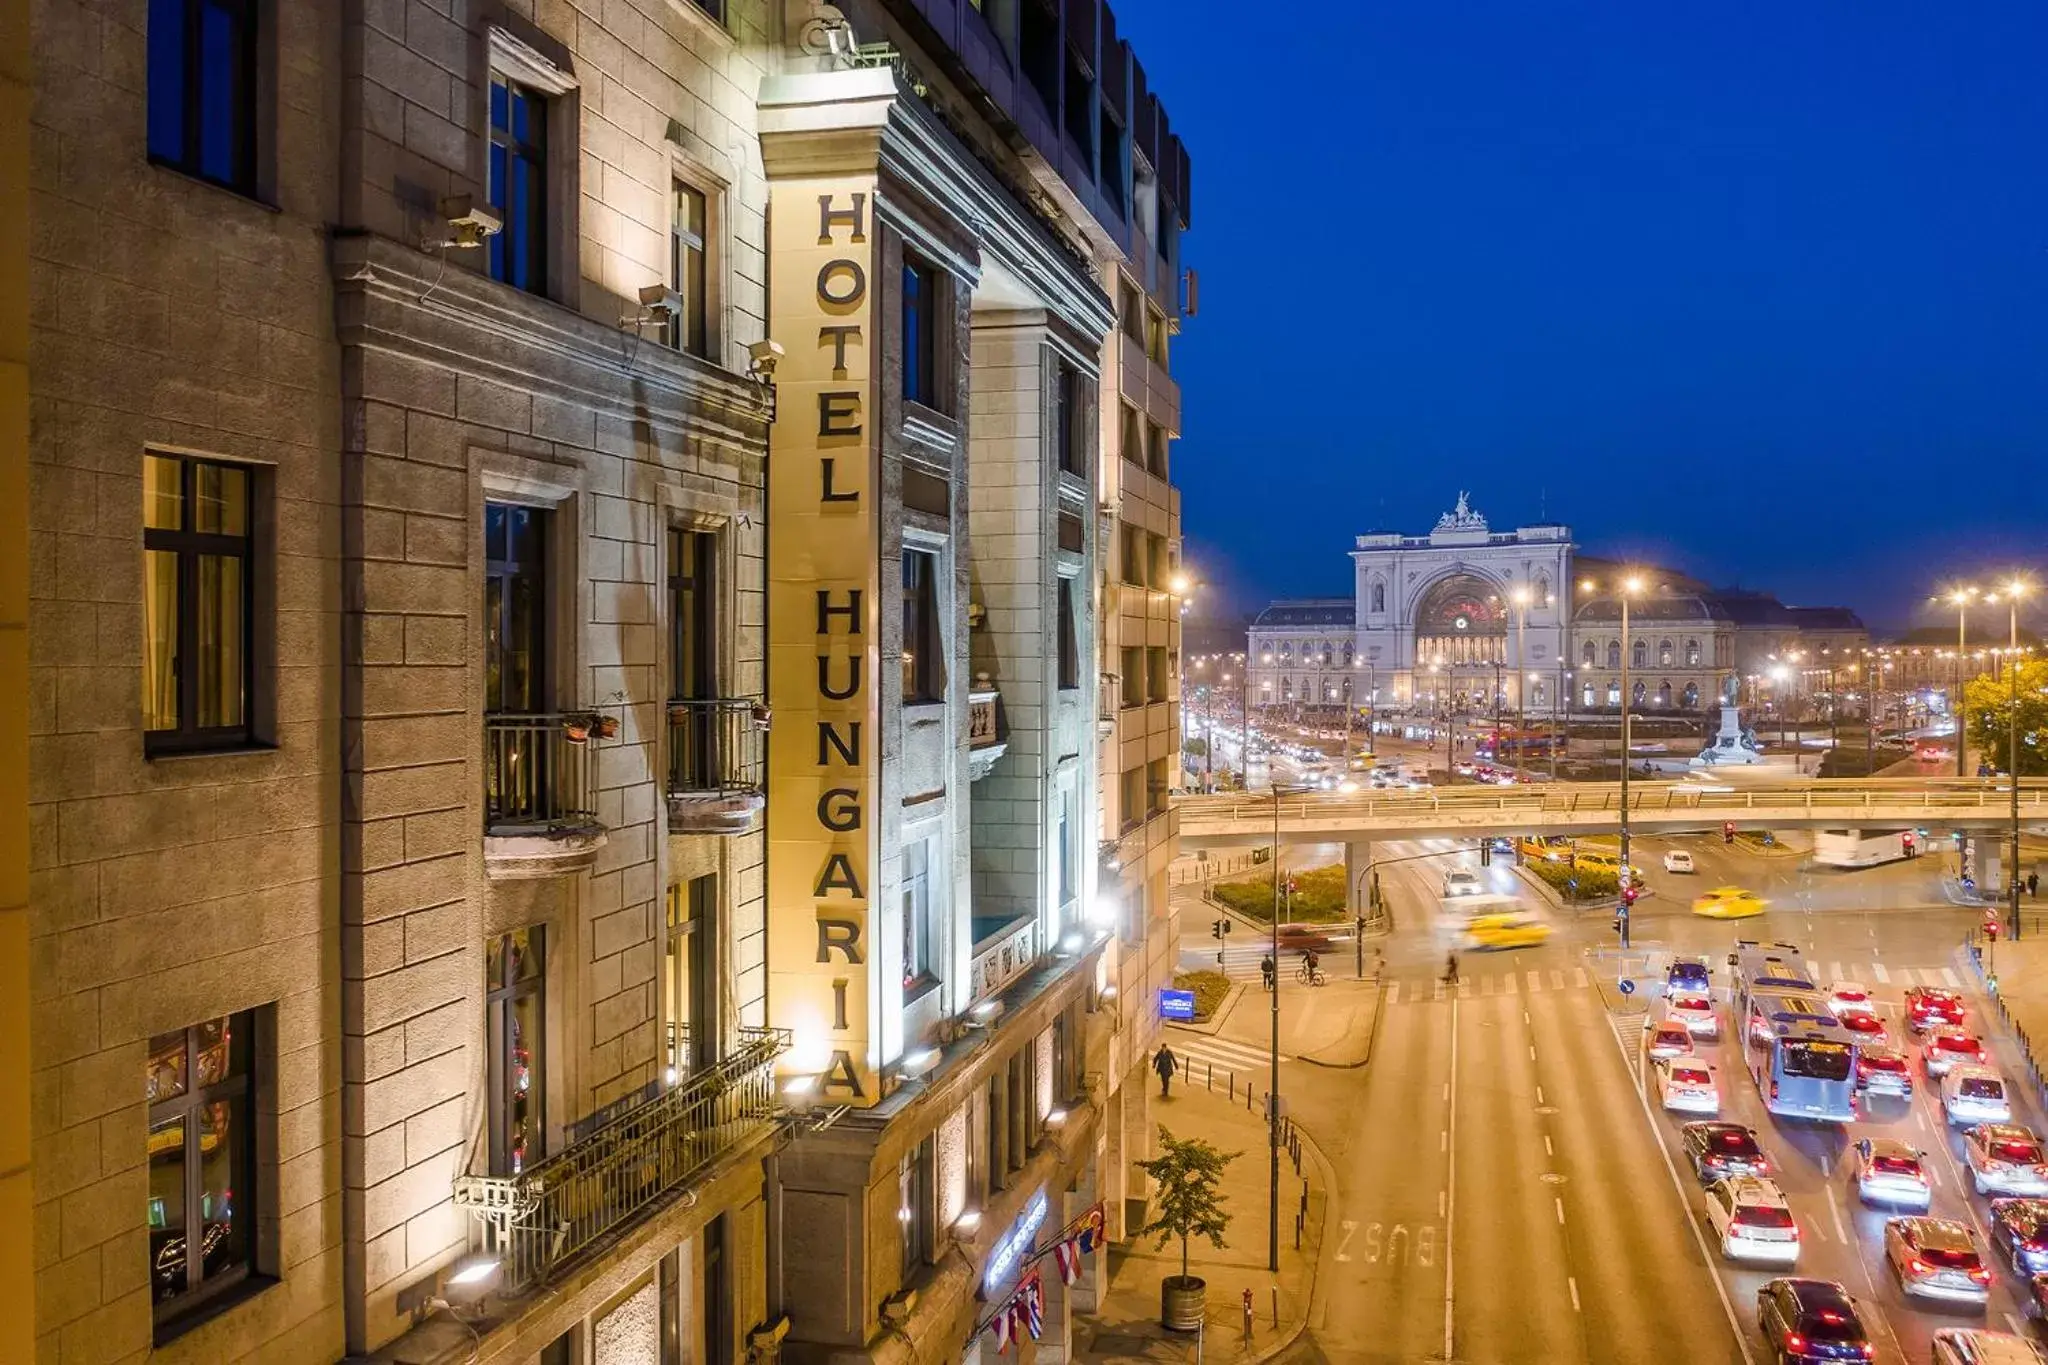 Facade/entrance in Danubius Hotel Hungaria City Center